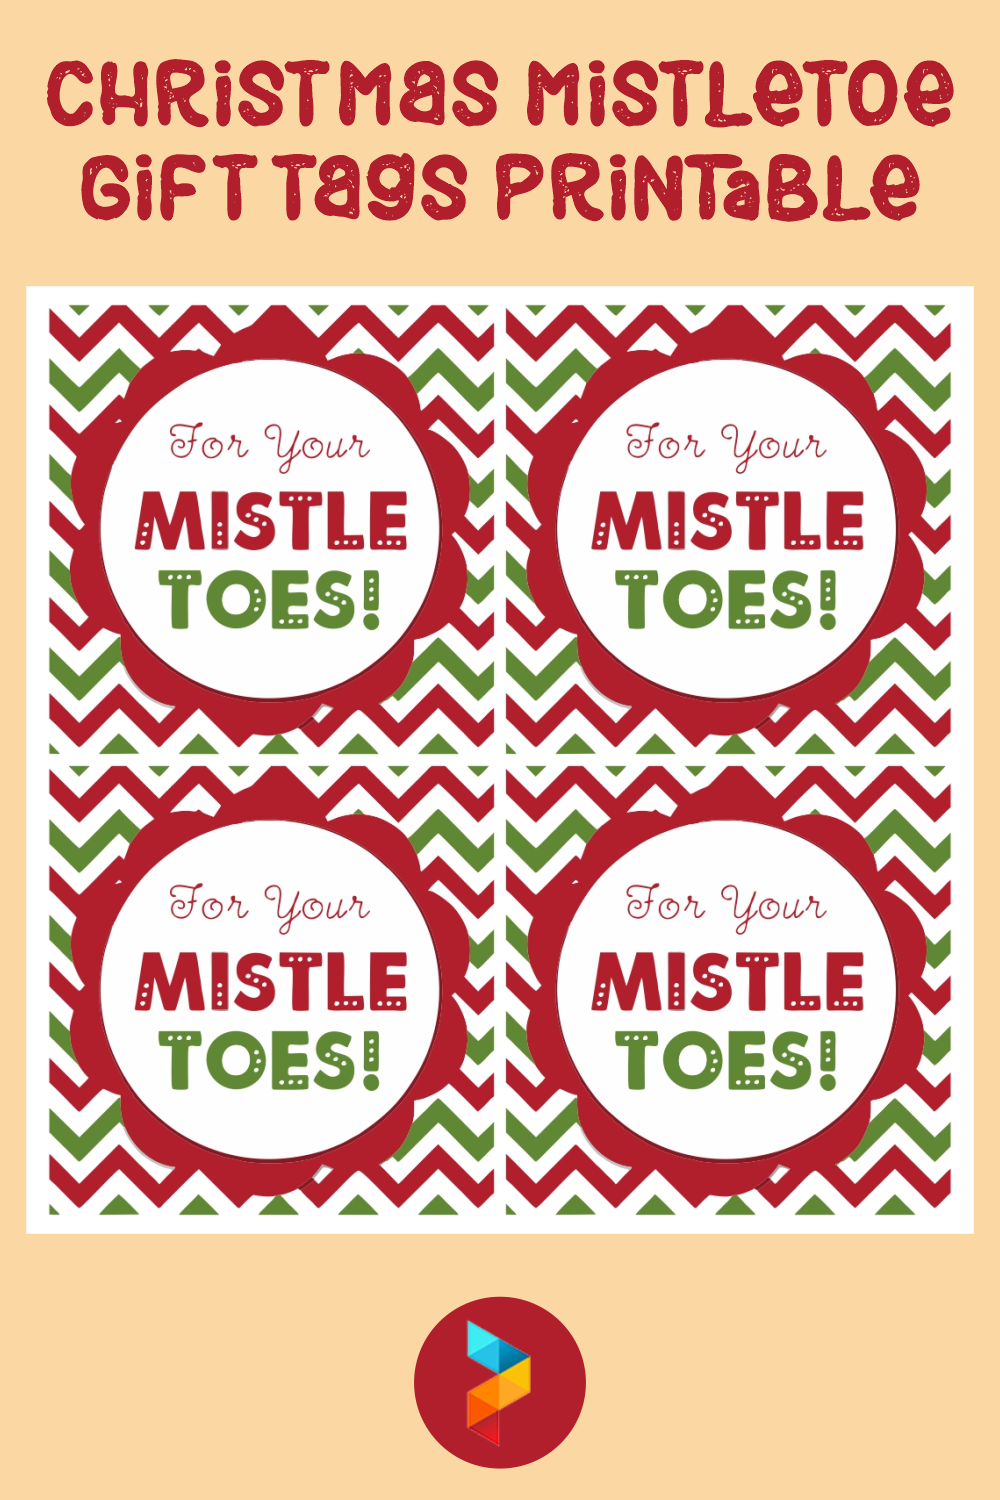 Christmas Mistletoe Gift Tags Printable for Free Printable Mistletoe Tags